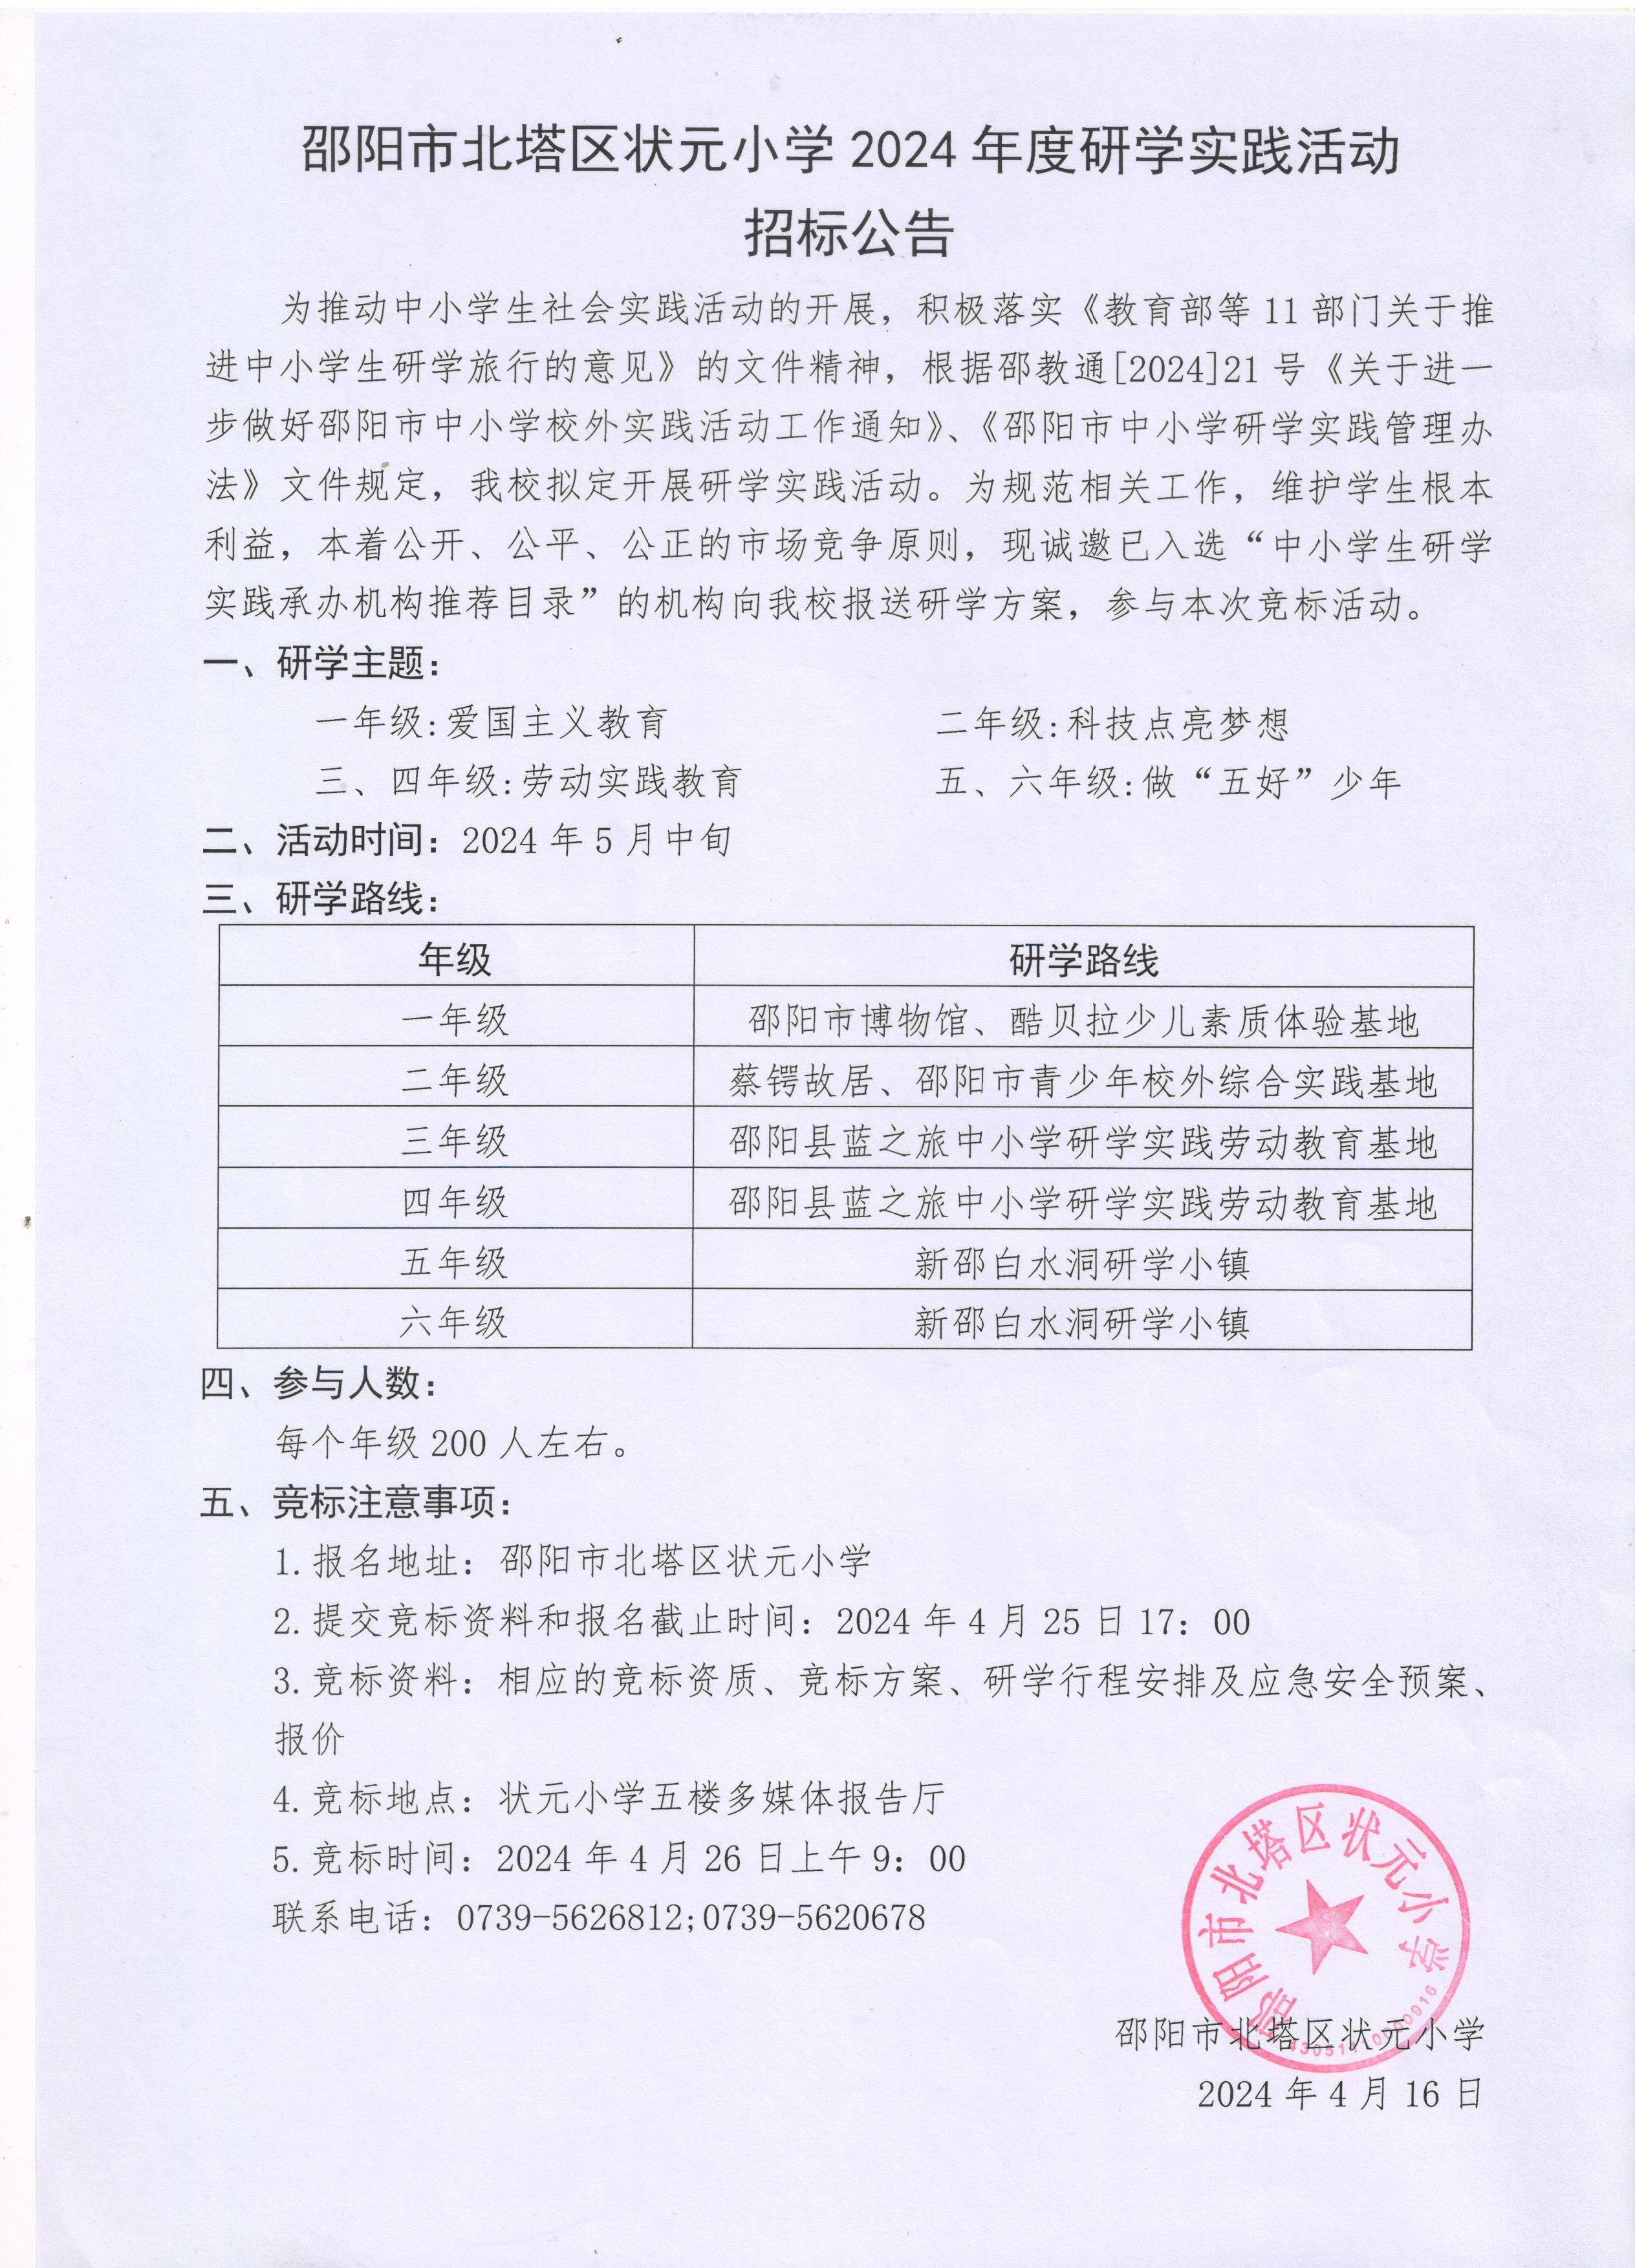 邵阳市北塔区状元小学2024年研学实践活动招标公告(图1)